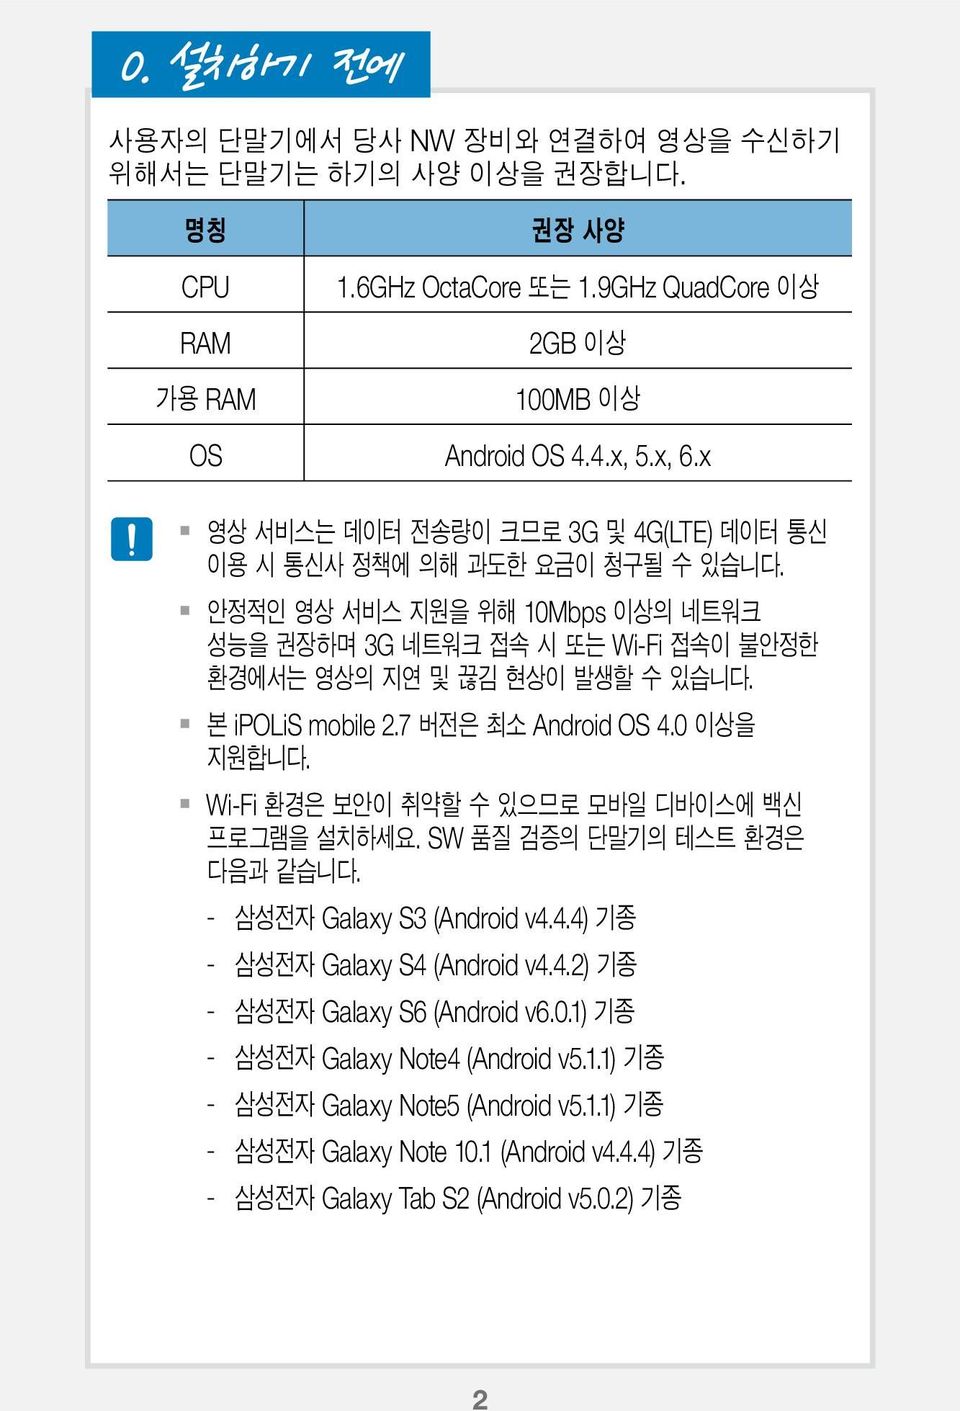 - Galaxy S3 (Android v4.4.4) - Galaxy S4 (Android v4.4.2) - Galaxy S6 (Android v6.0.